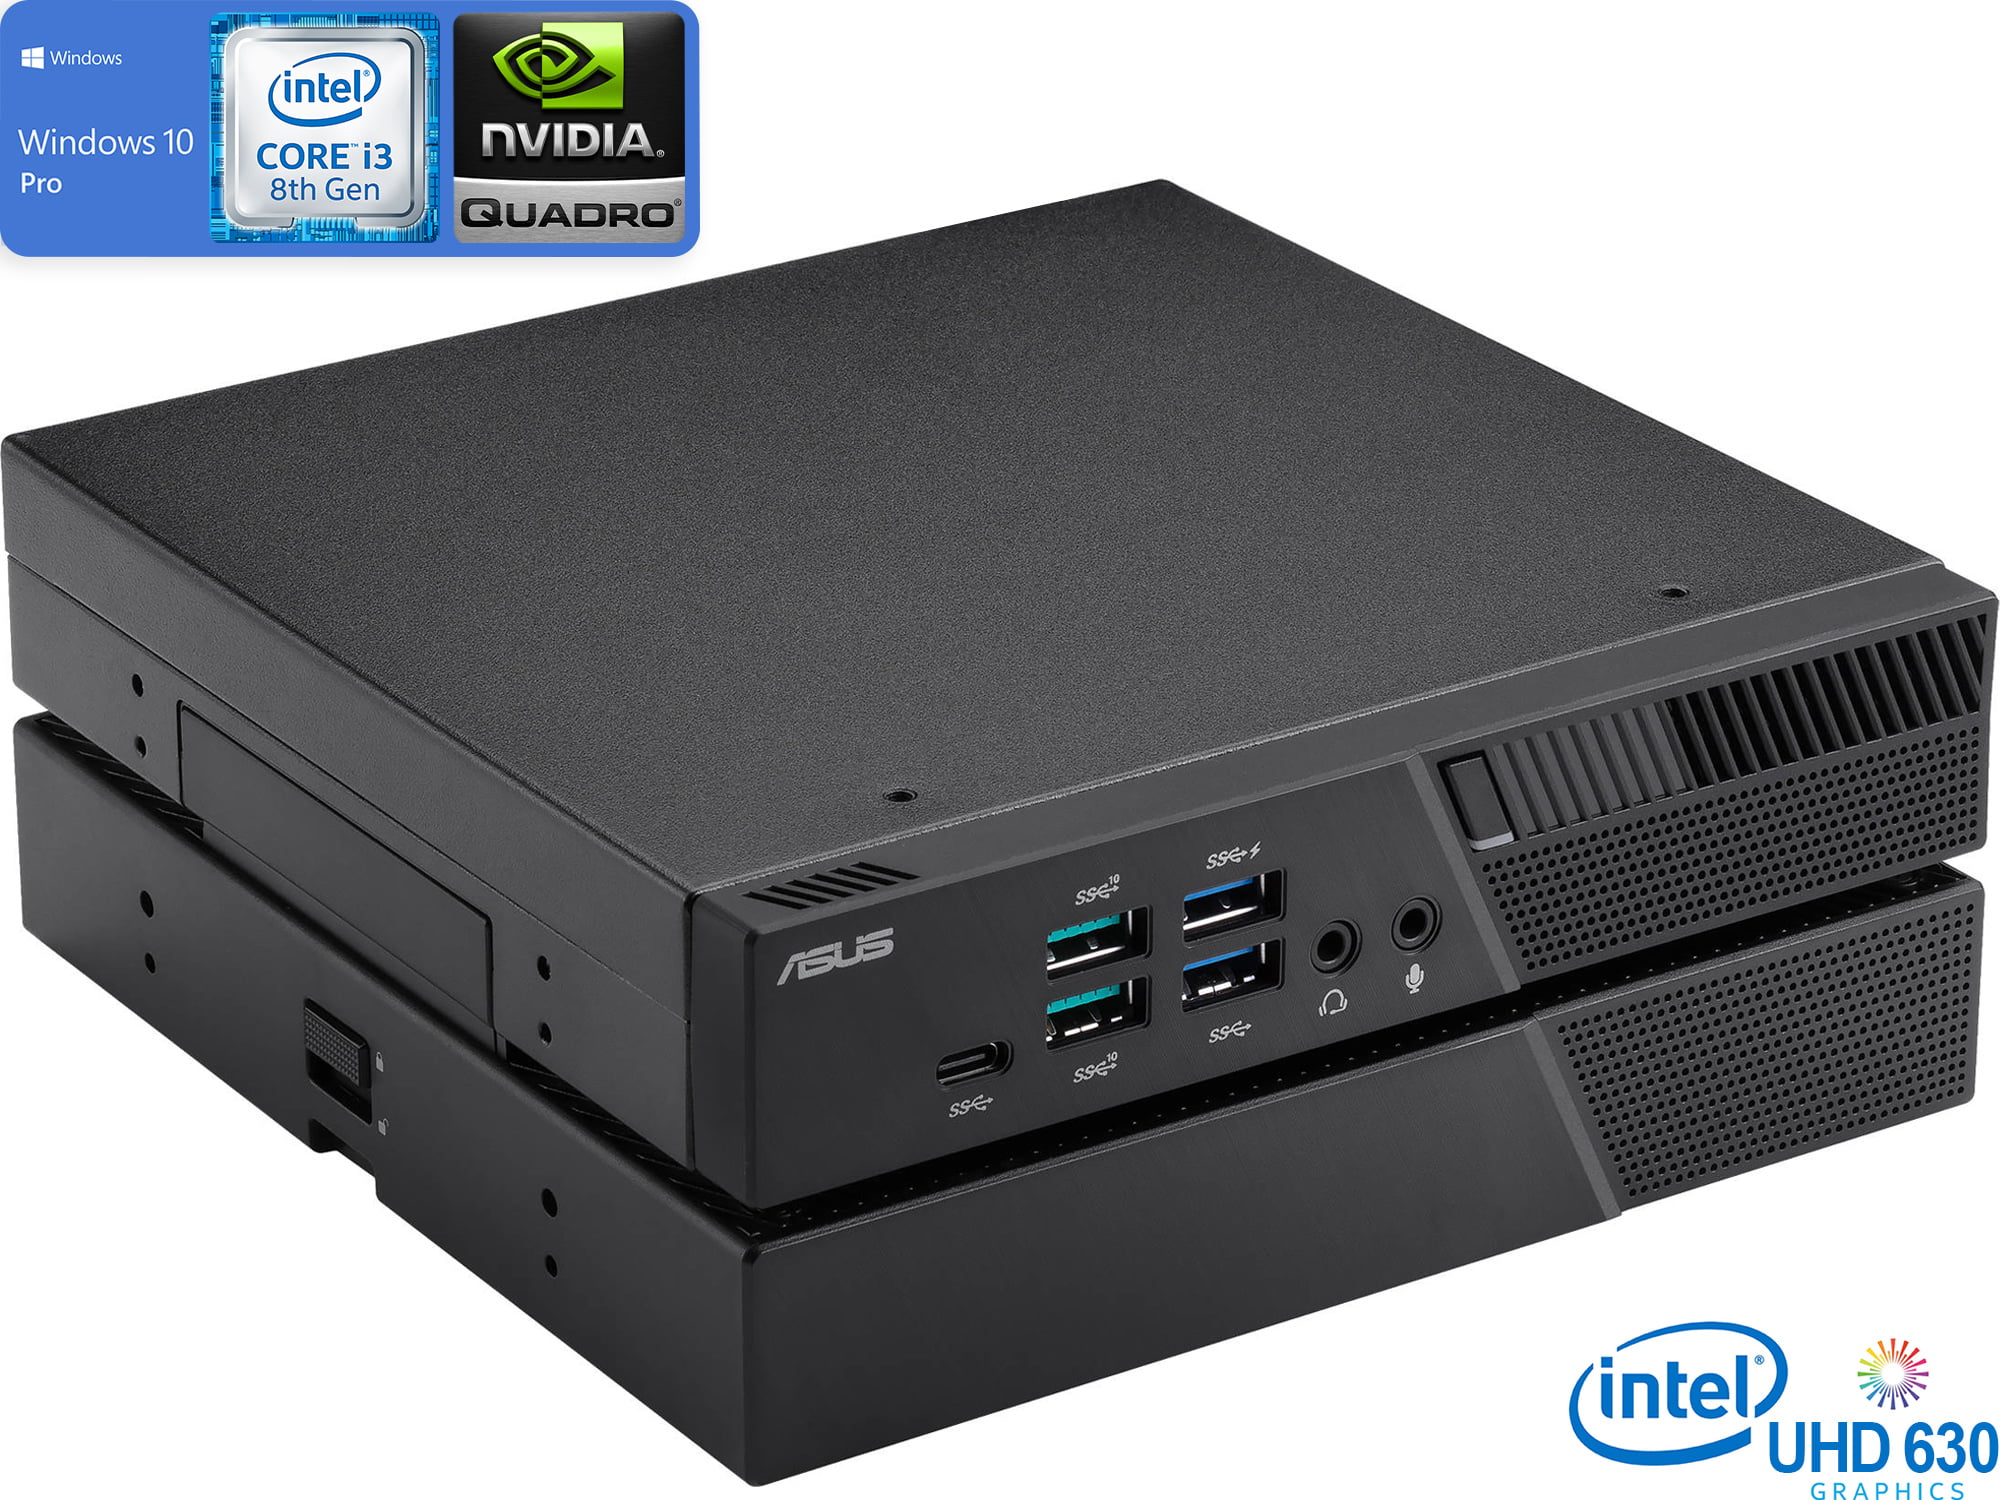 ASUS PB60G Mini PC, Intel Core i3-8100T 3.1GHz, 8GB RAM, 256GB NVMe SSD, NVIDIA Quadro HDMI, DisplayPort, Mini Wi-Fi, Bluetooth, Windows 10 Pro (PB60G-B3013ZD) - Walmart.com